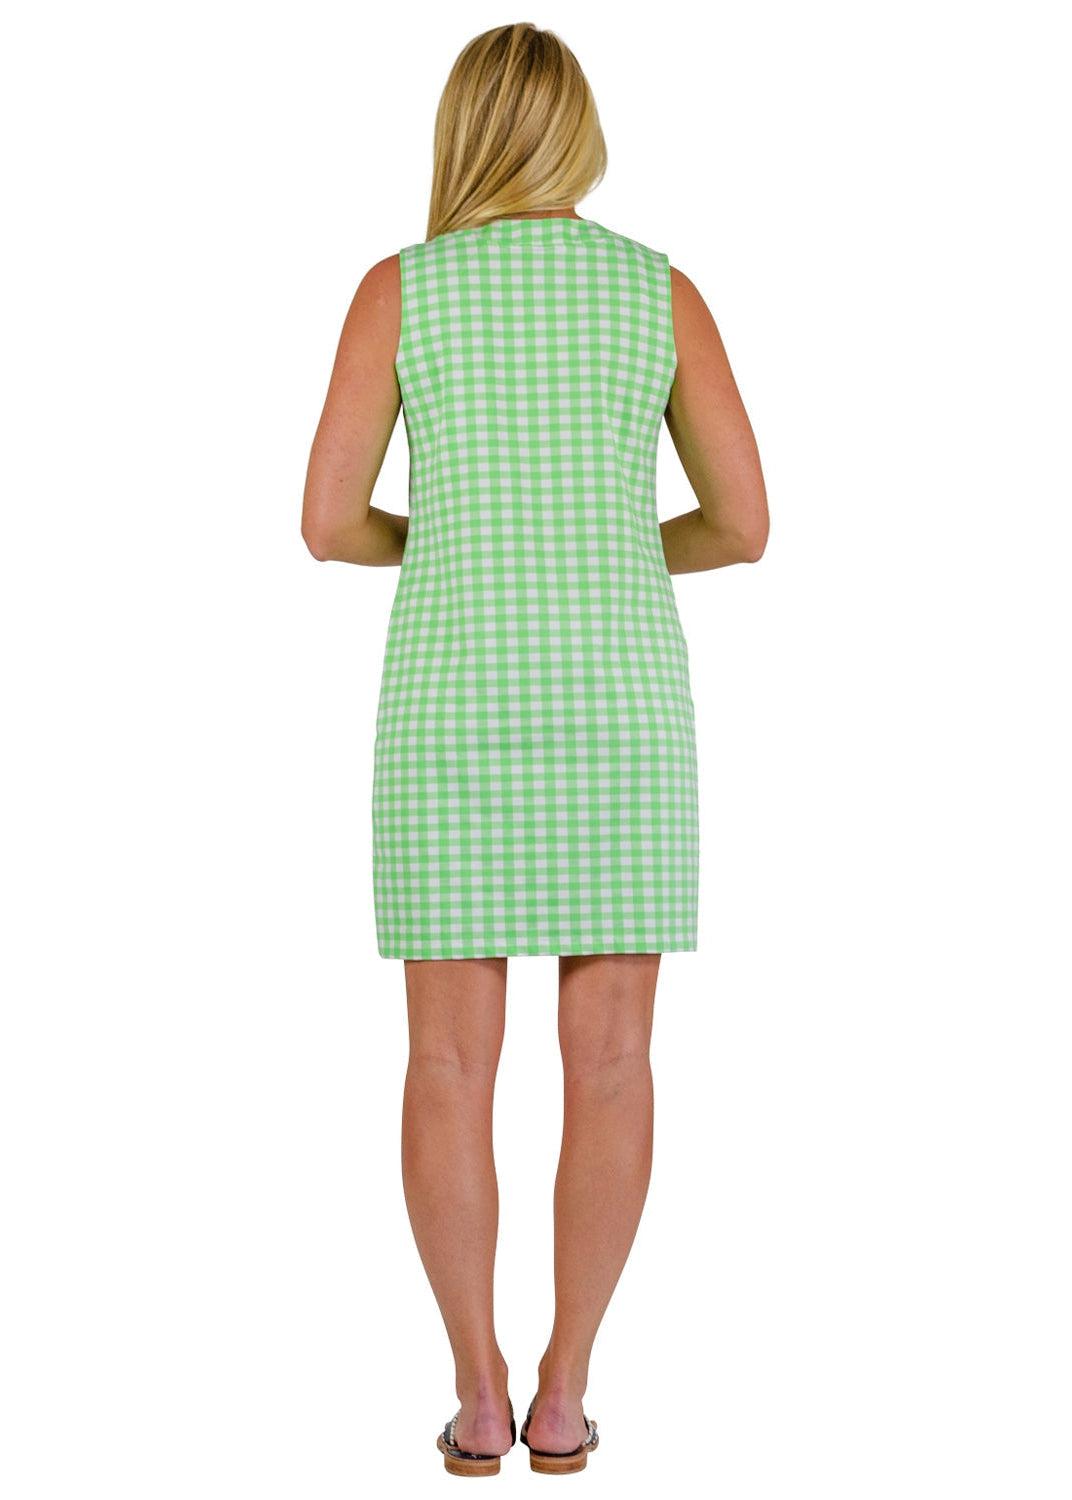 Lucille Dress Sleeveless - Gingham Check Green - FINAL SALE-2